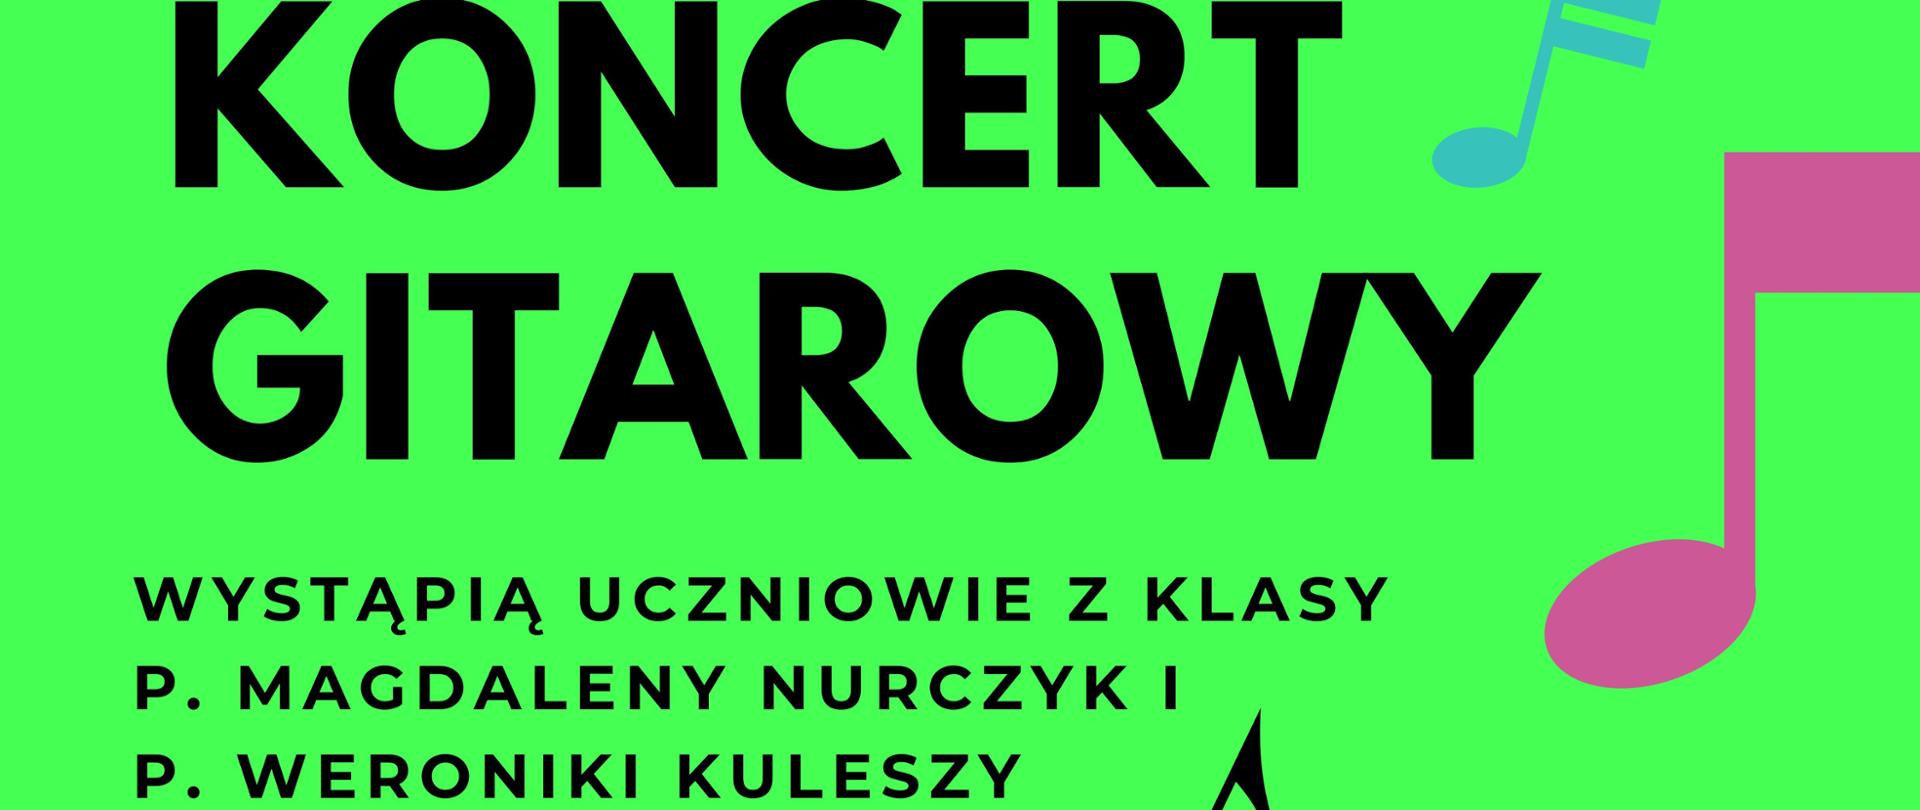 Plakat zapraszający na koncert gitarowy. na zielonym tle znajdują się kolorowe nuty i gitary.